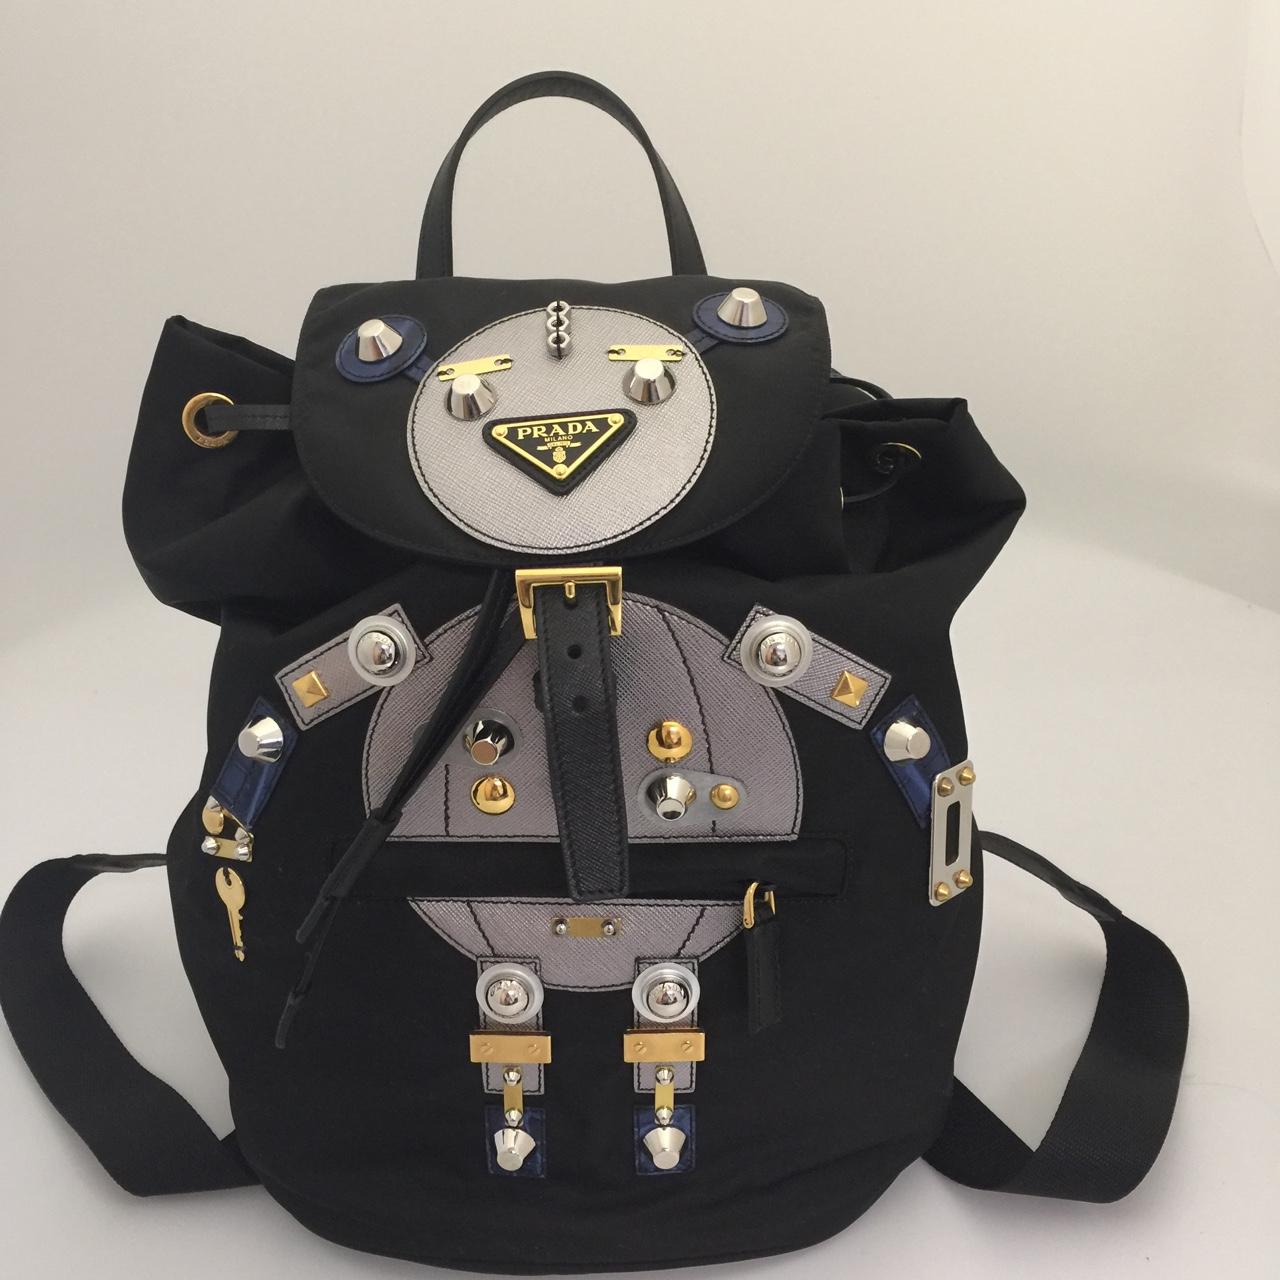 Pin by Imene Gorgi on Bricolage | Prada backpack, Bags, Luxury backpack